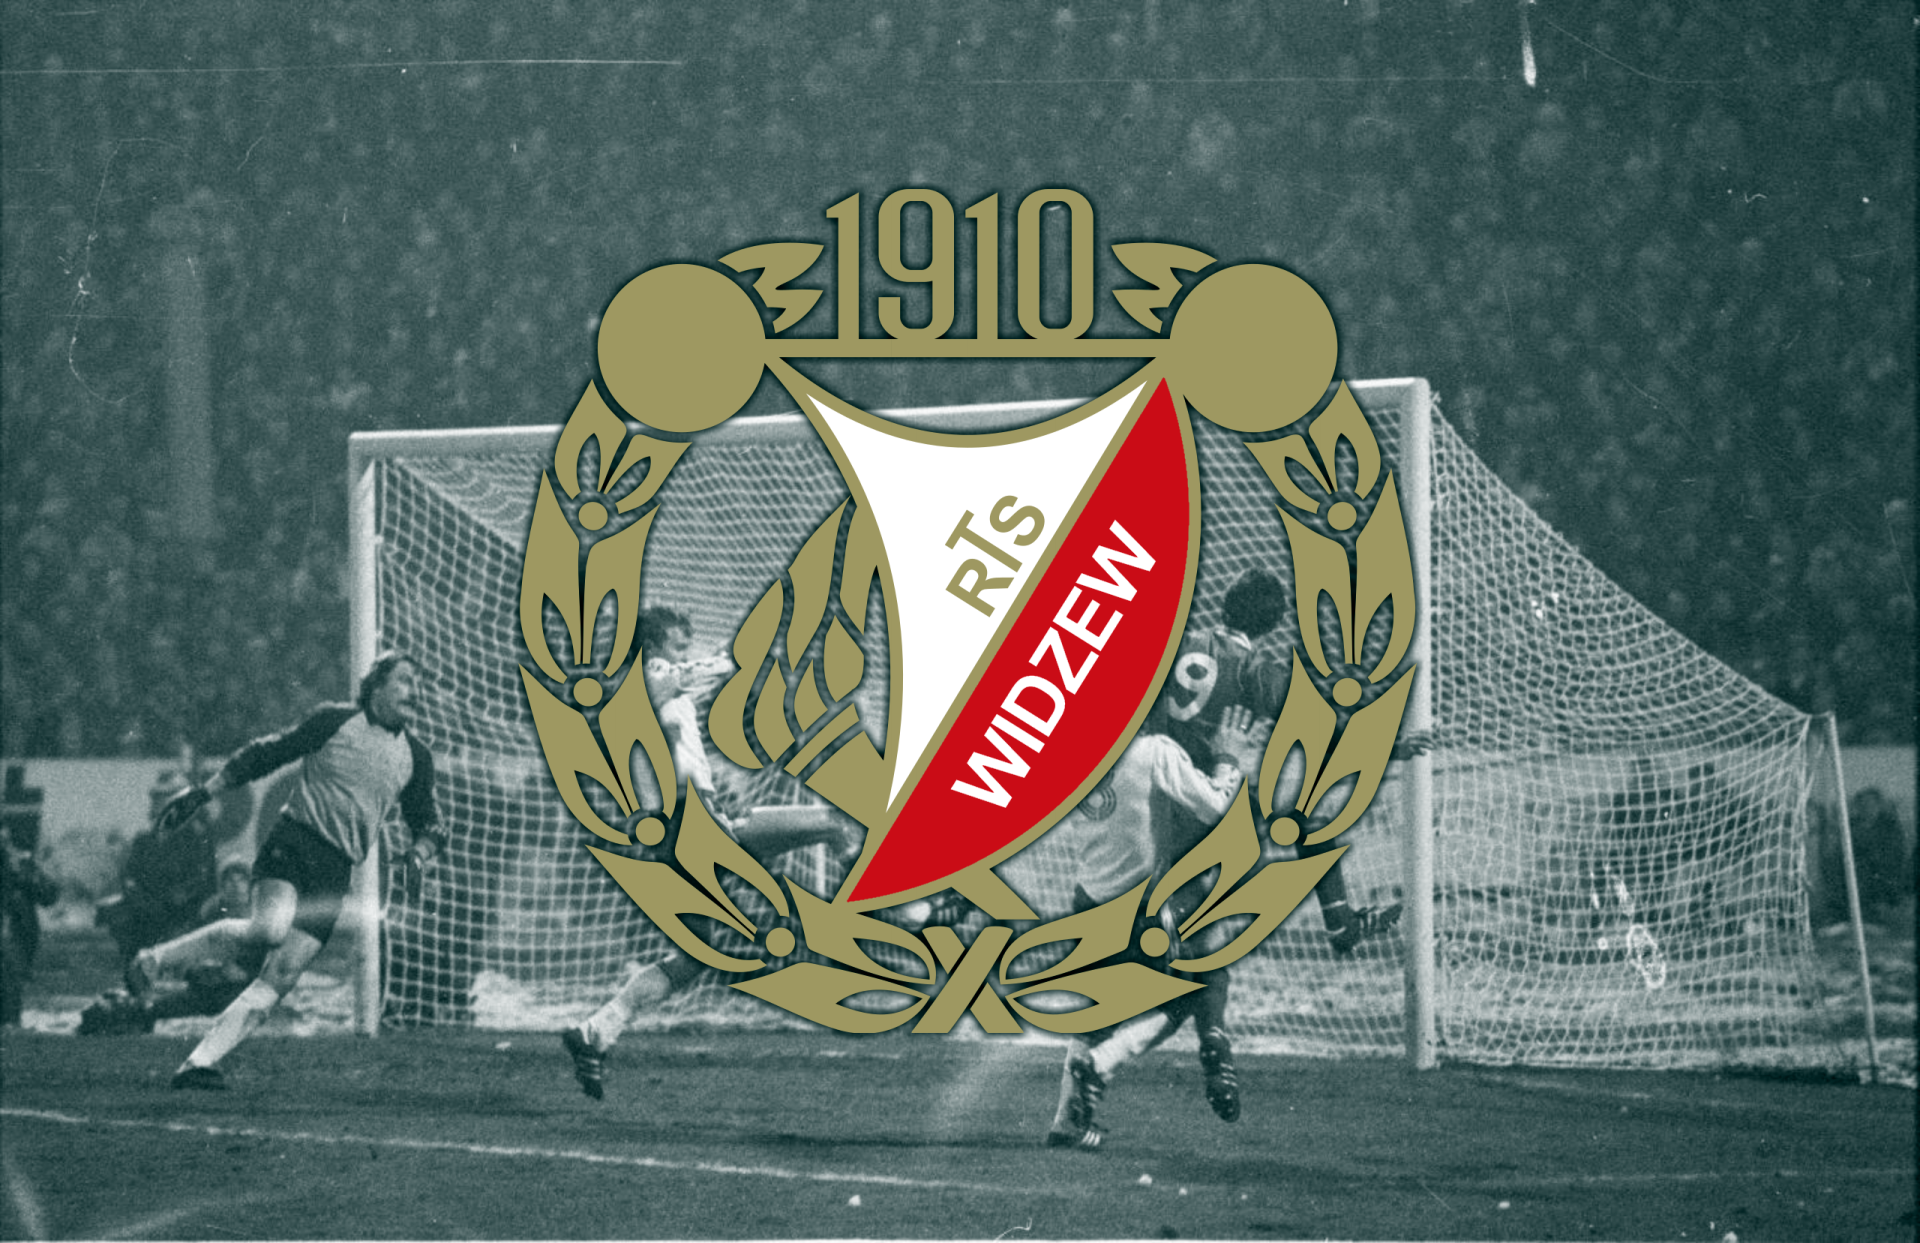 Historical Polish Widzew Łódź Sports Image